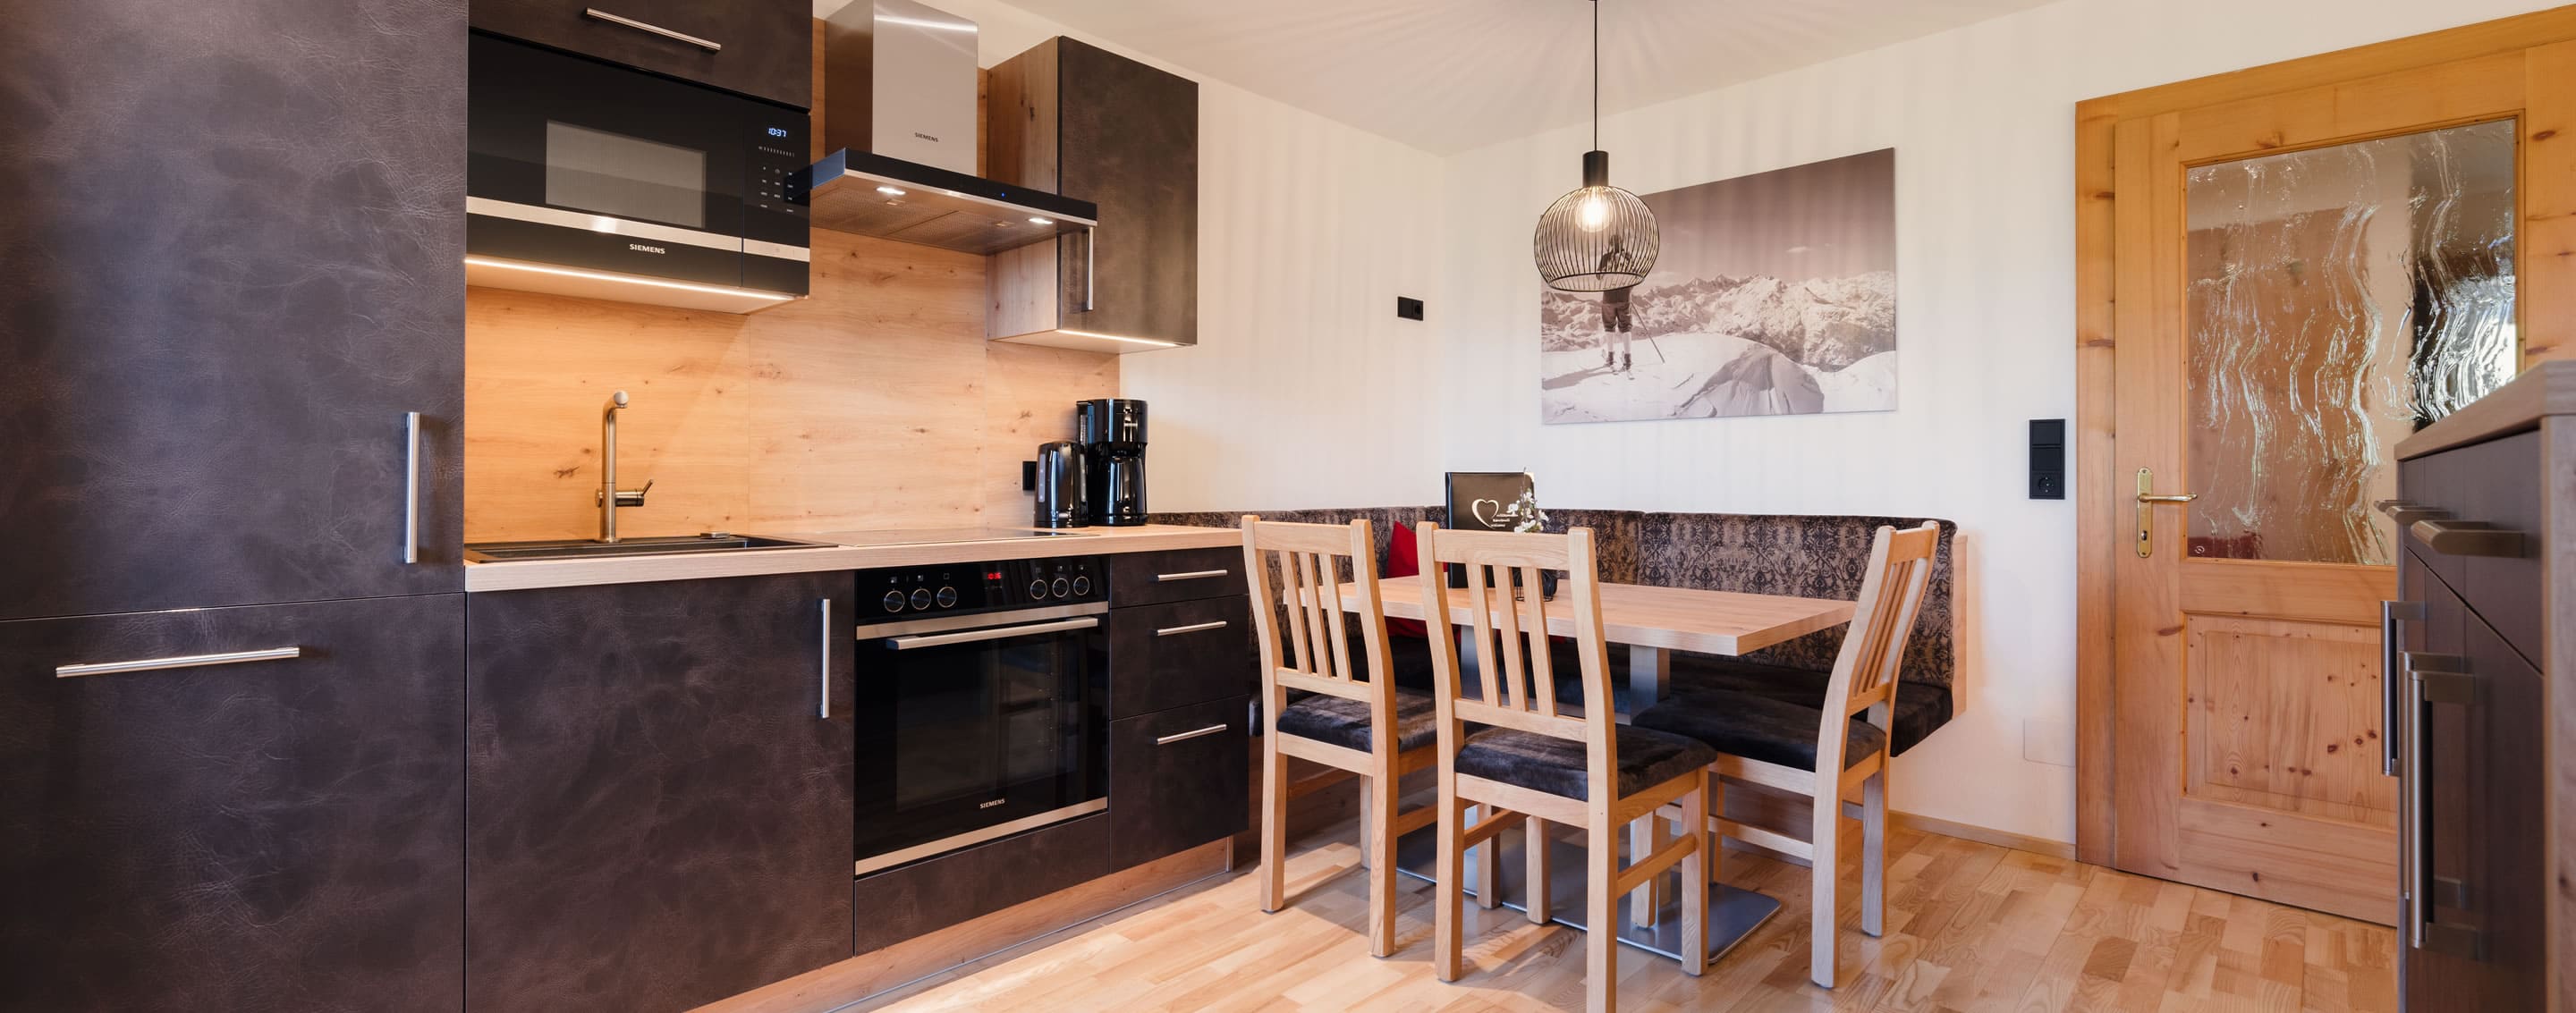 Urlaub im Familienbauernhof Samerhof - komfortable Appartements für bis zu 6 Personen